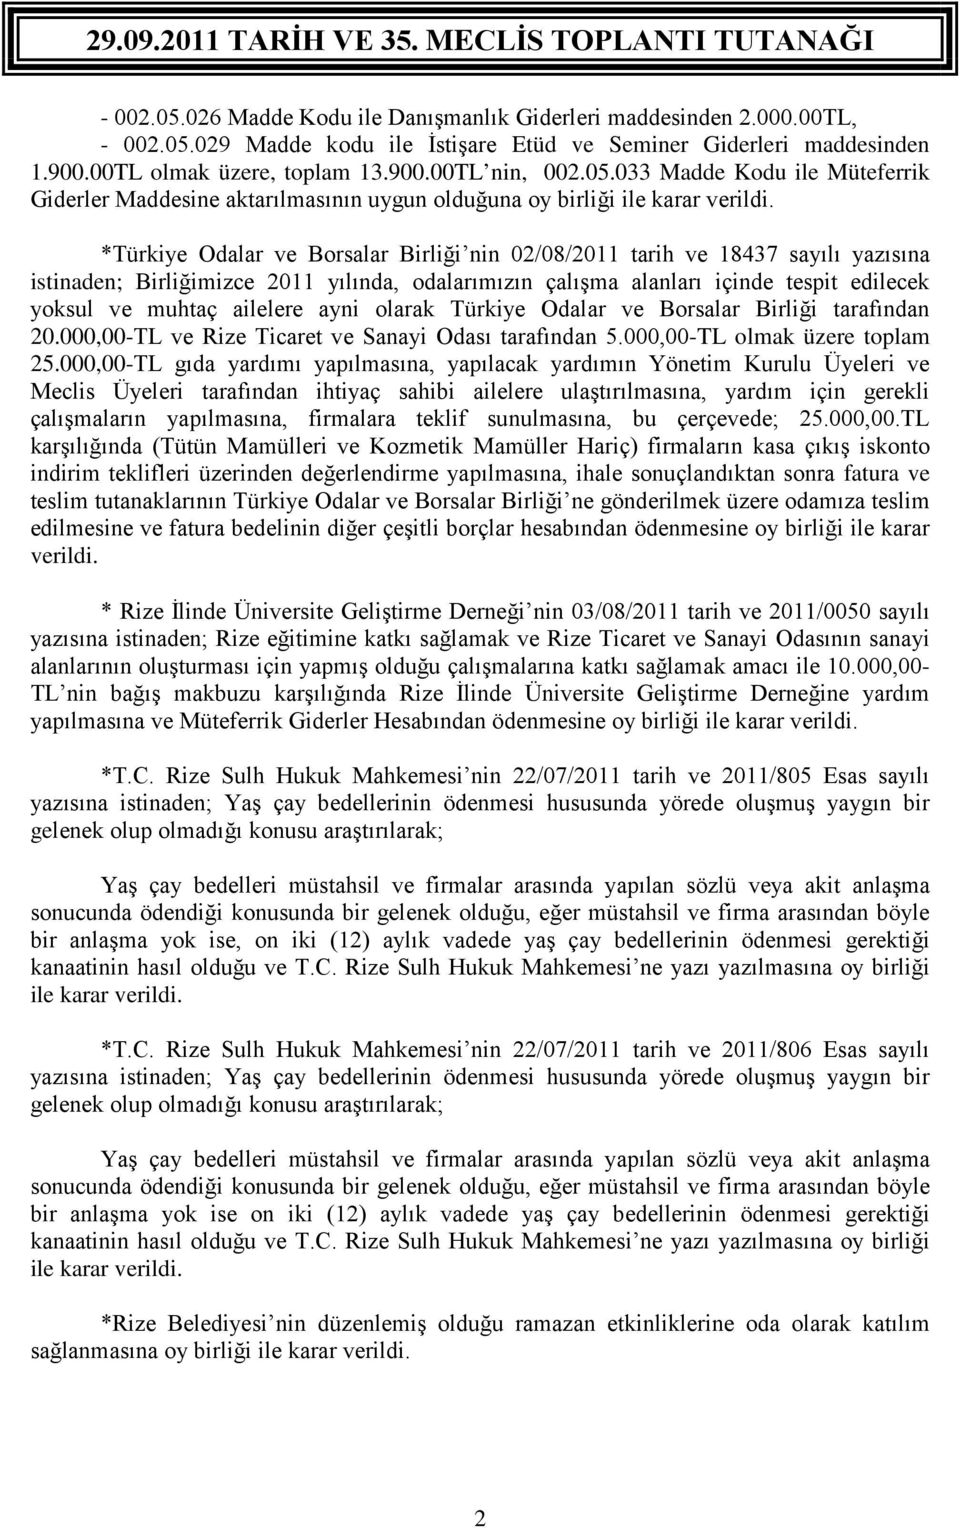 *Türkiye Odalar ve Borsalar Birliği nin 02/08/2011 tarih ve 18437 sayılı yazısına istinaden; Birliğimizce 2011 yılında, odalarımızın çalışma alanları içinde tespit edilecek yoksul ve muhtaç ailelere